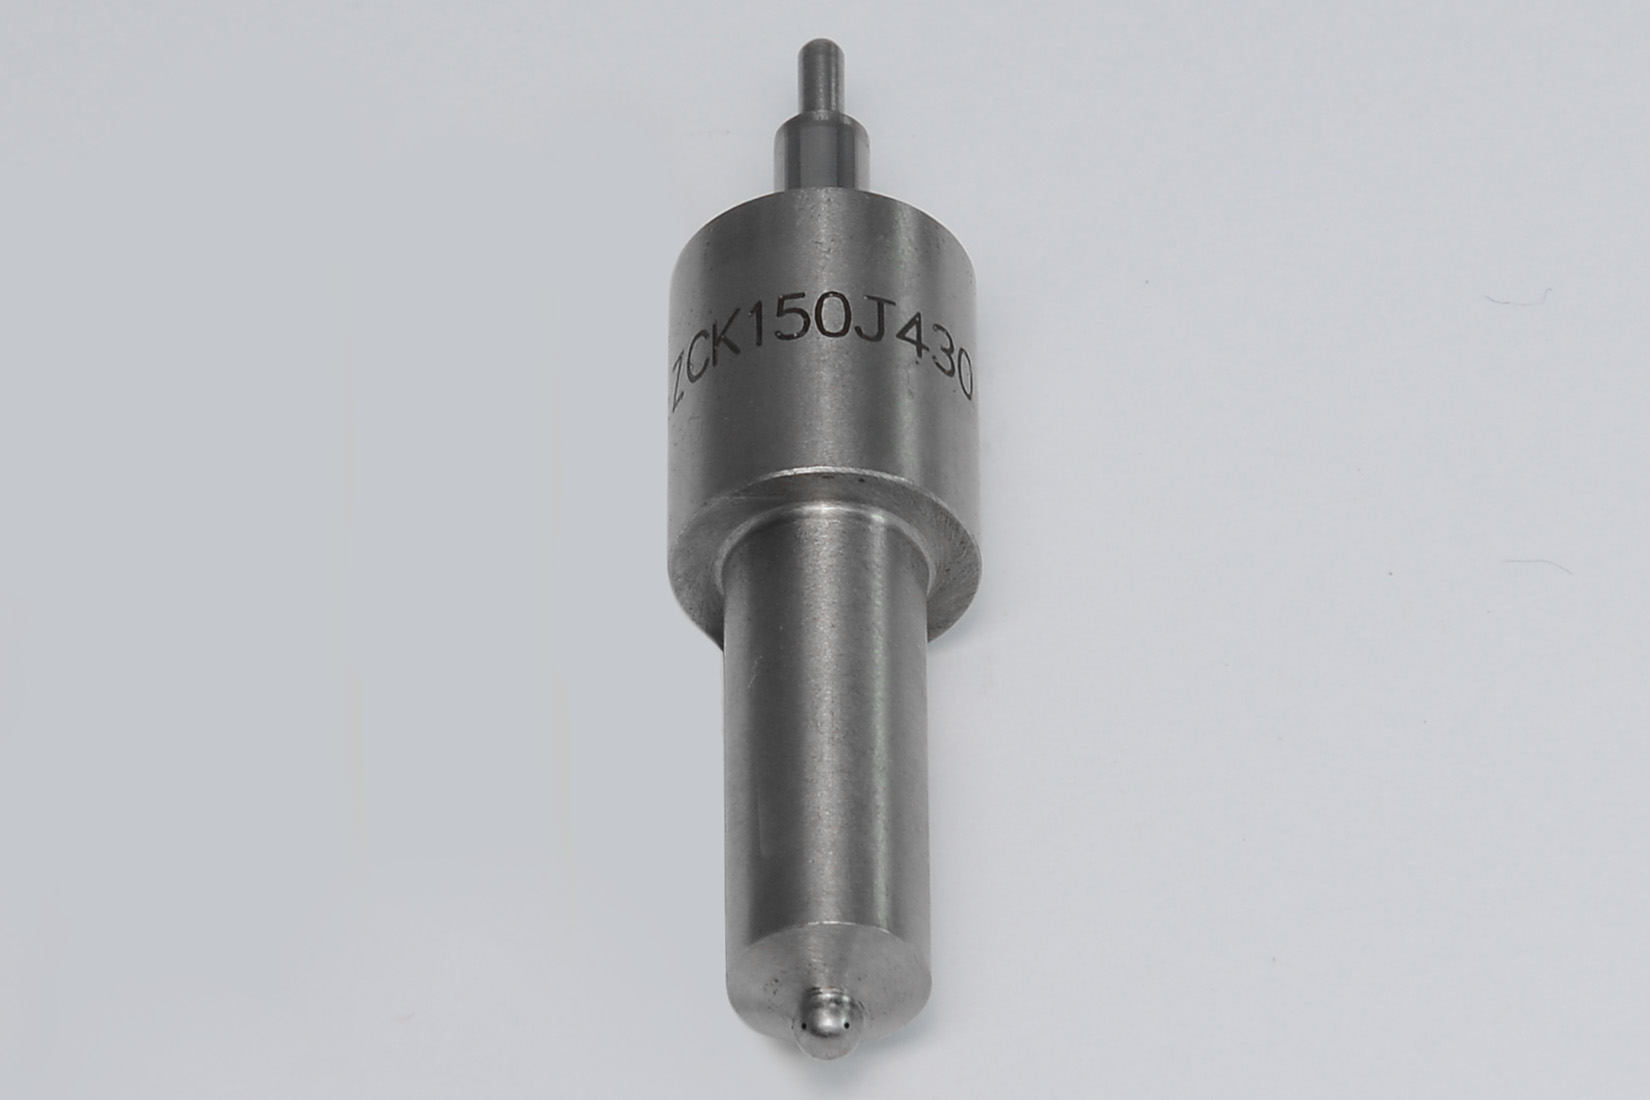 Распылитель форсунки ( L=49.5 mm) Ricardo R6105AZLDS1; TDK 110 6LT/Nozzle,ZCK 150J430